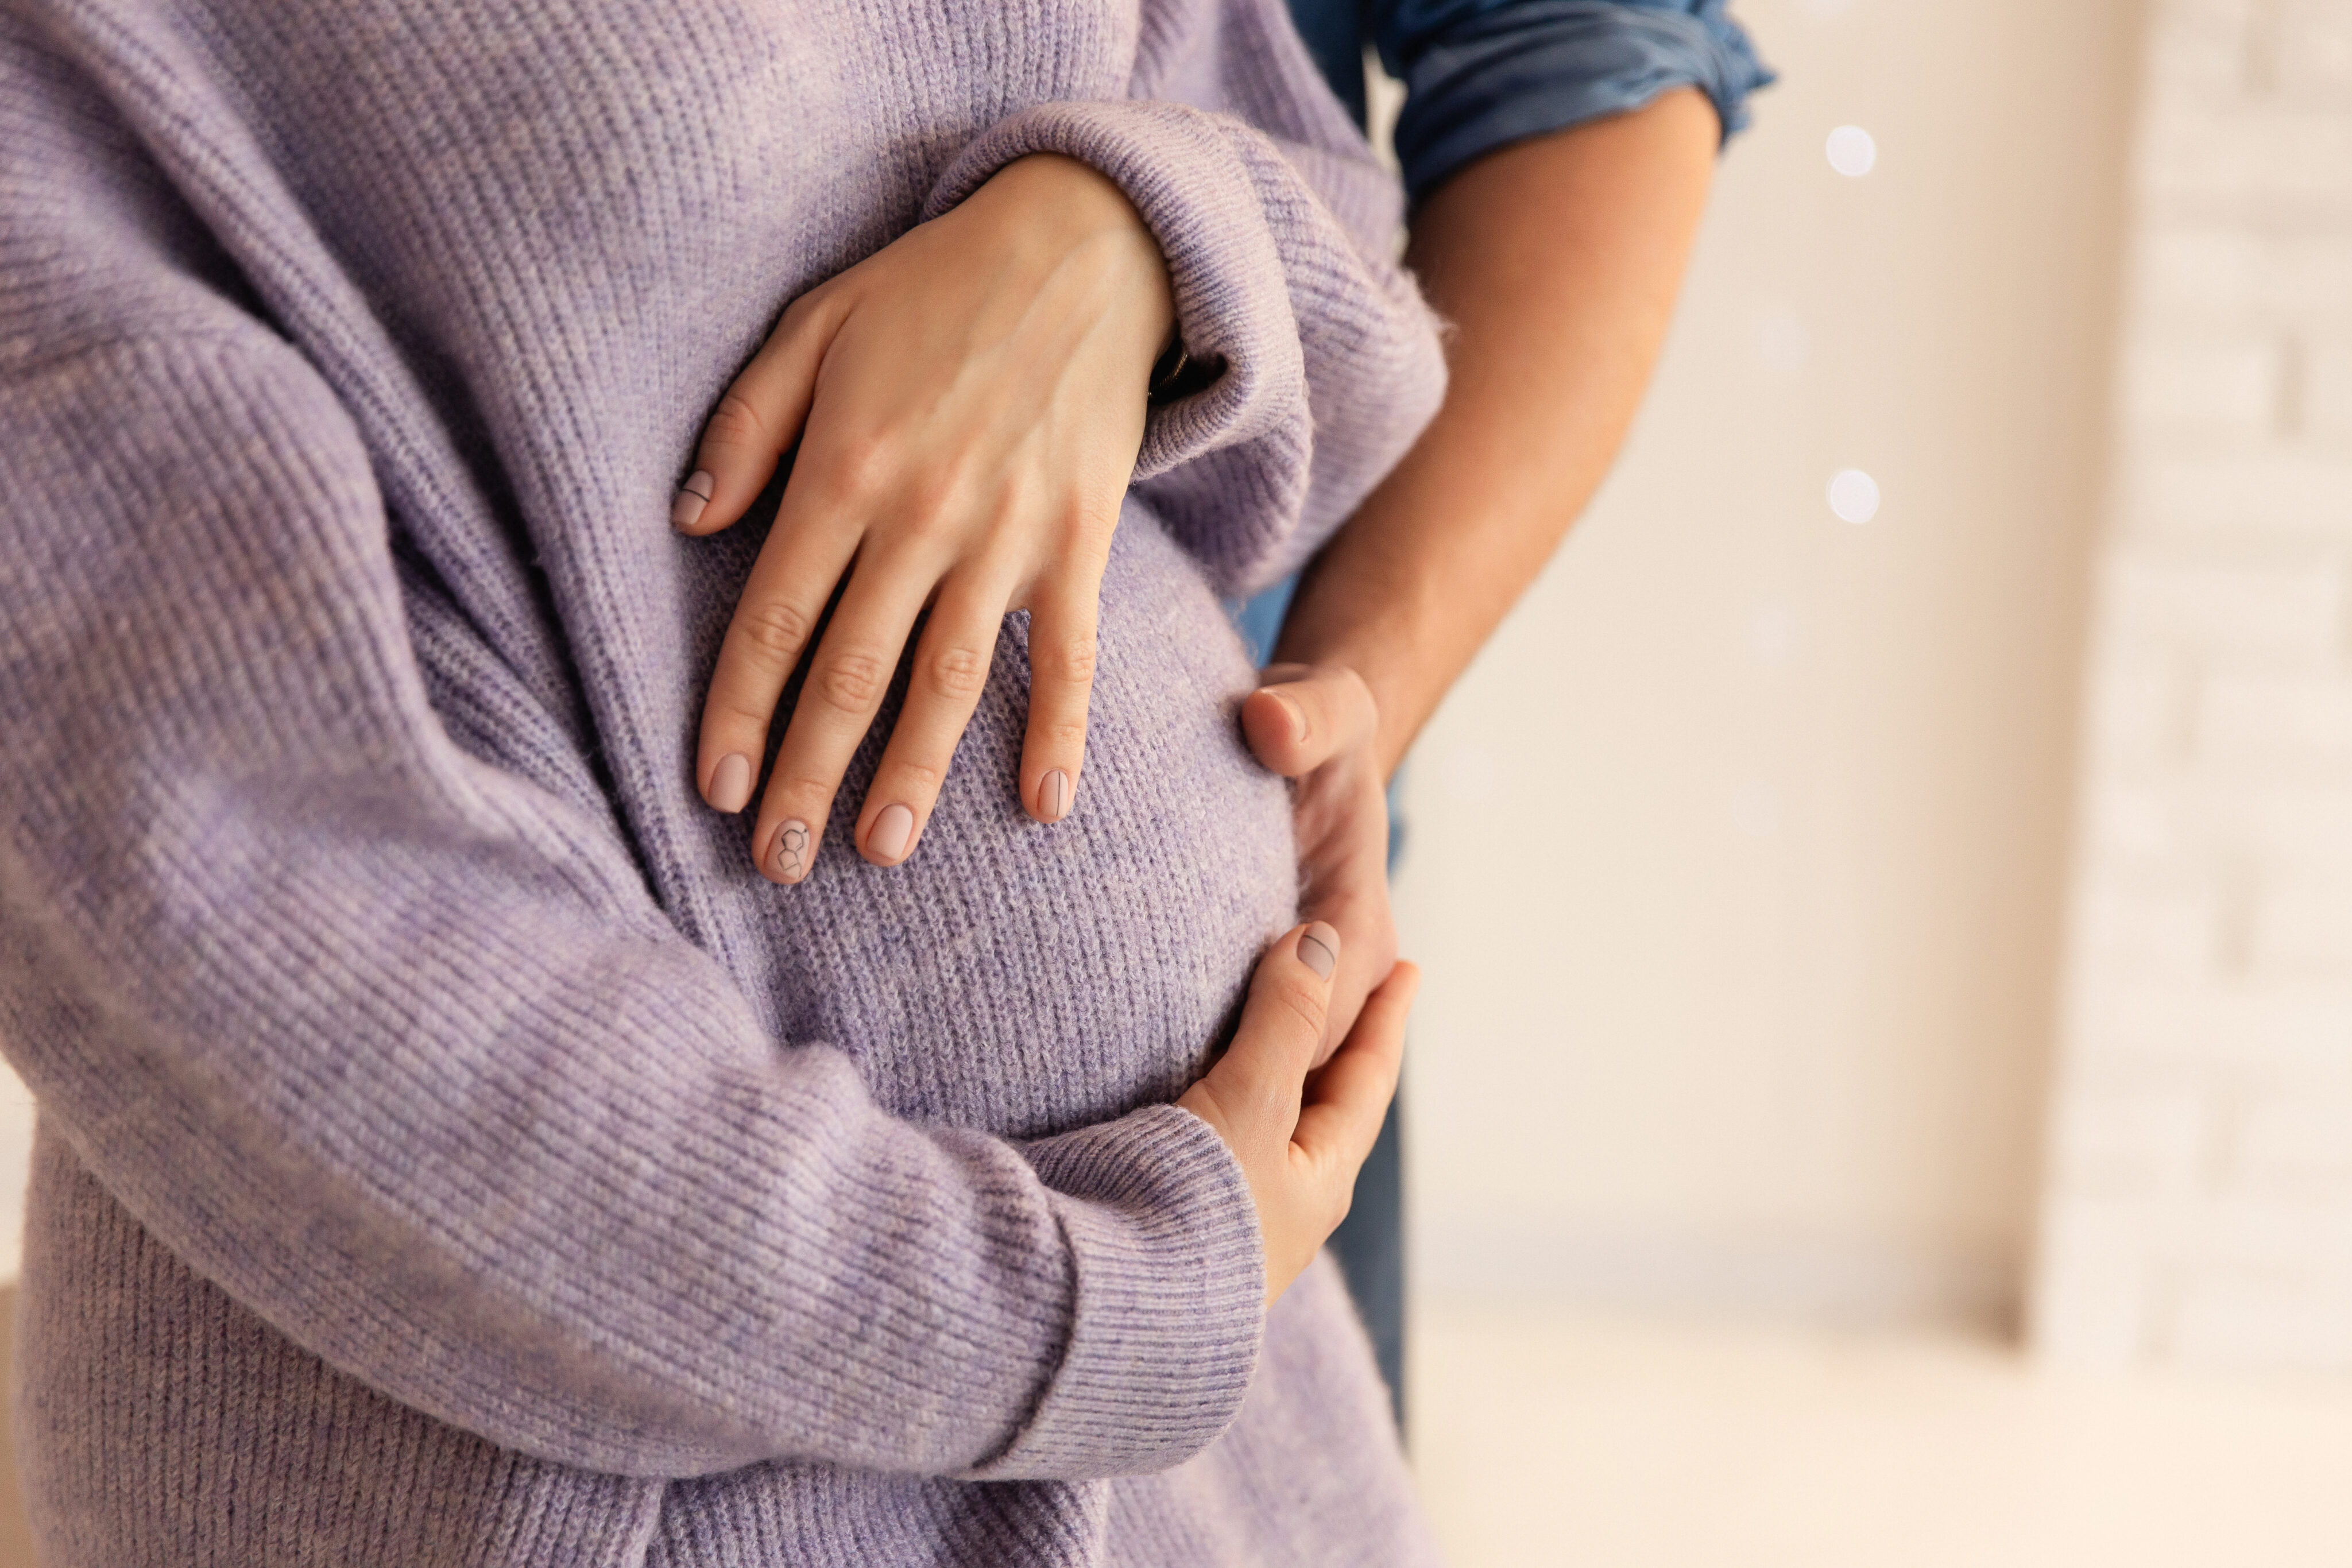 Schwangerschaft Alter: Paar umfasst Babybauch mit beiden Händen.